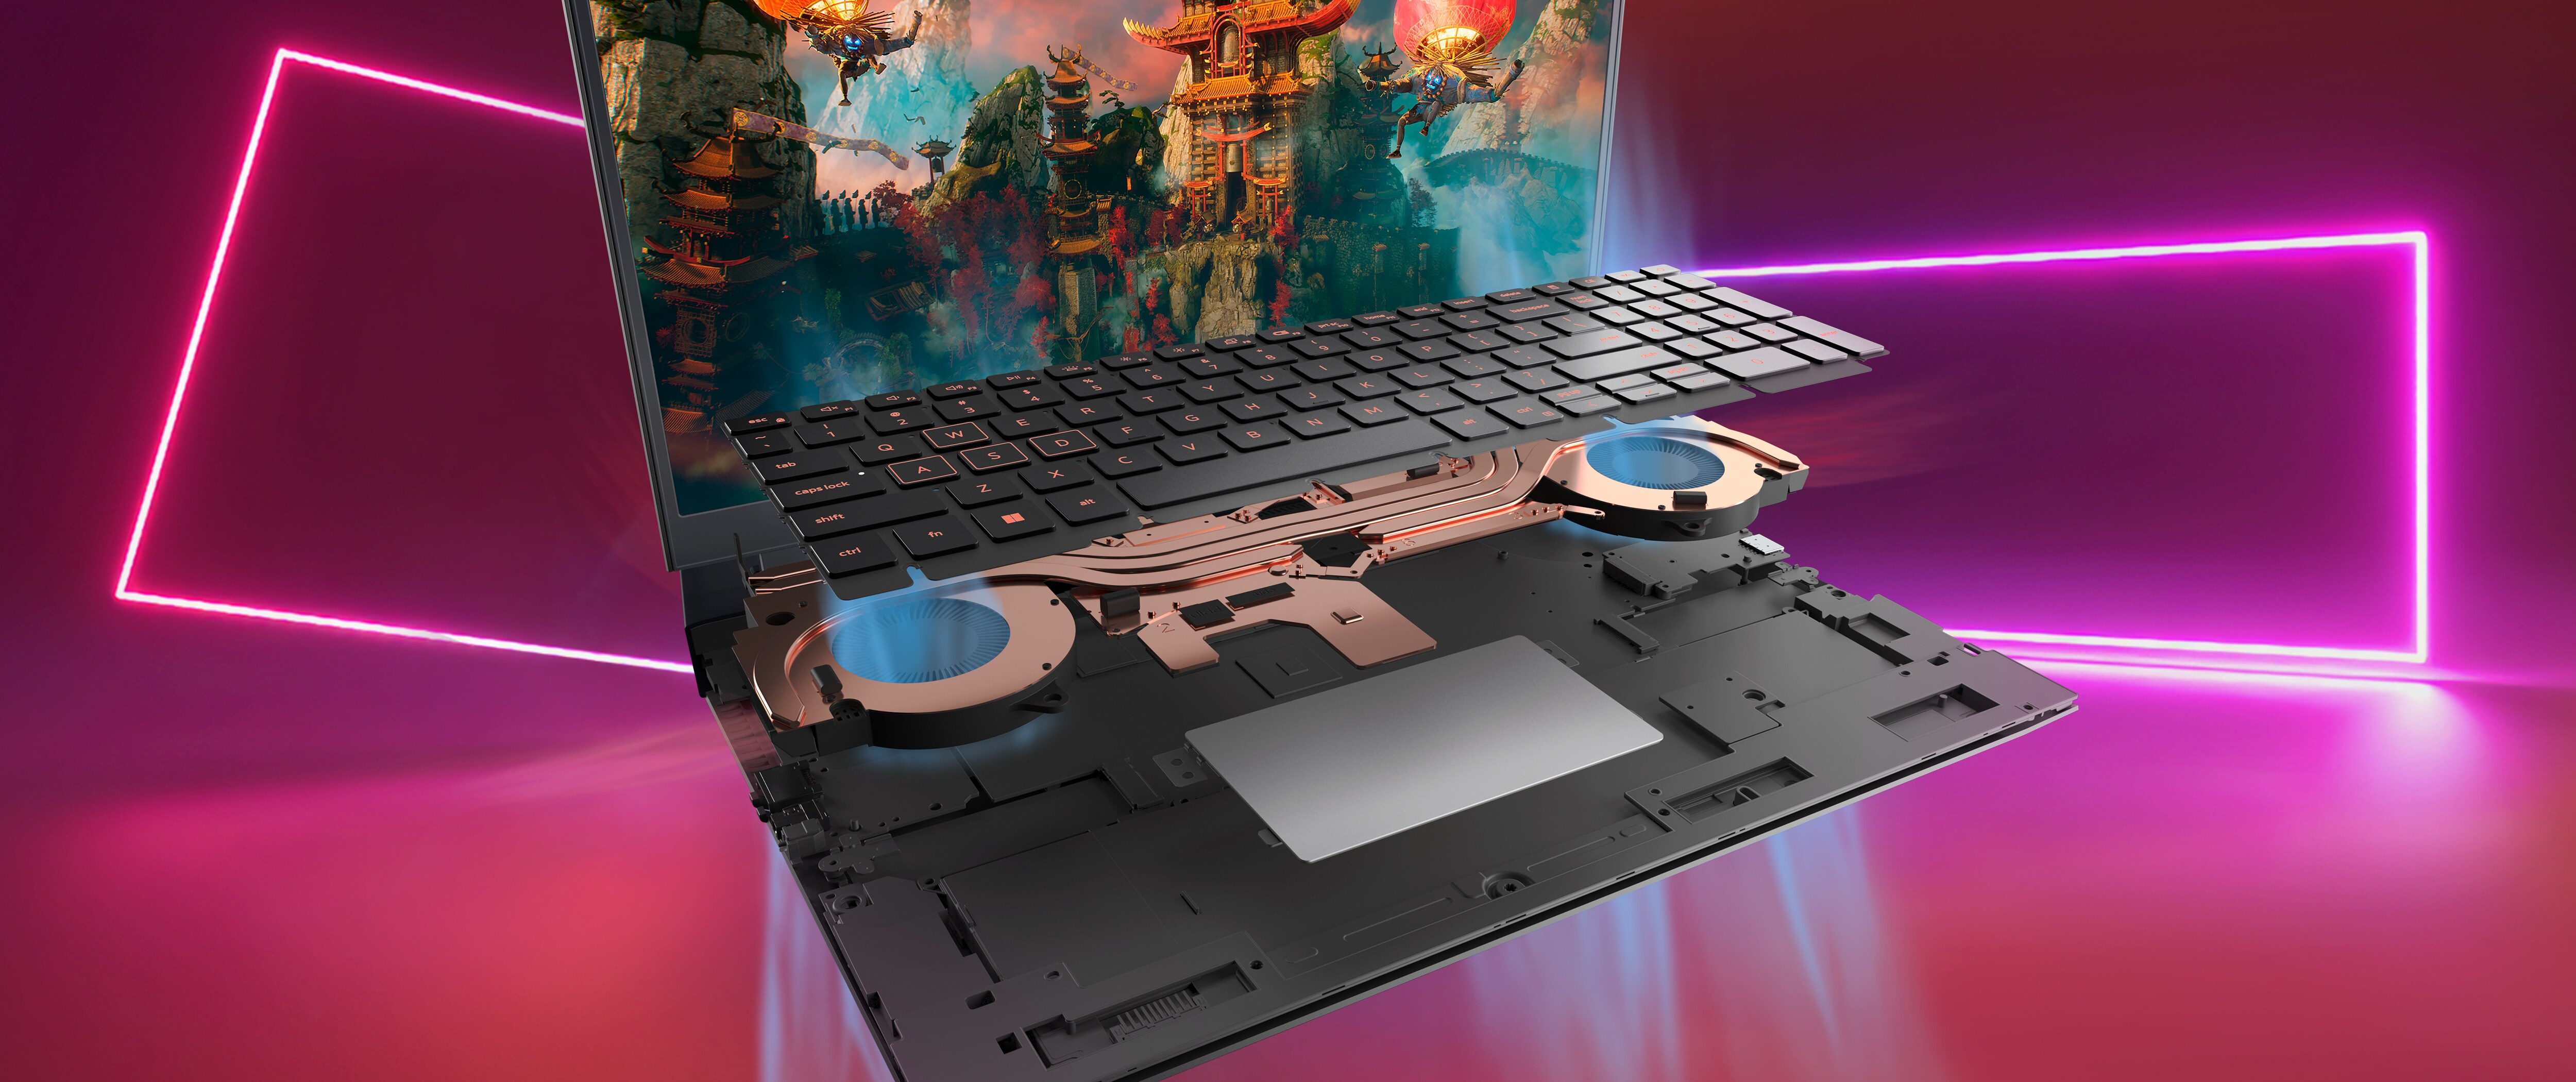 Imagen de una laptop para juegos Dell G15 5525 desmontada que muestra el teclado del producto en su interior.